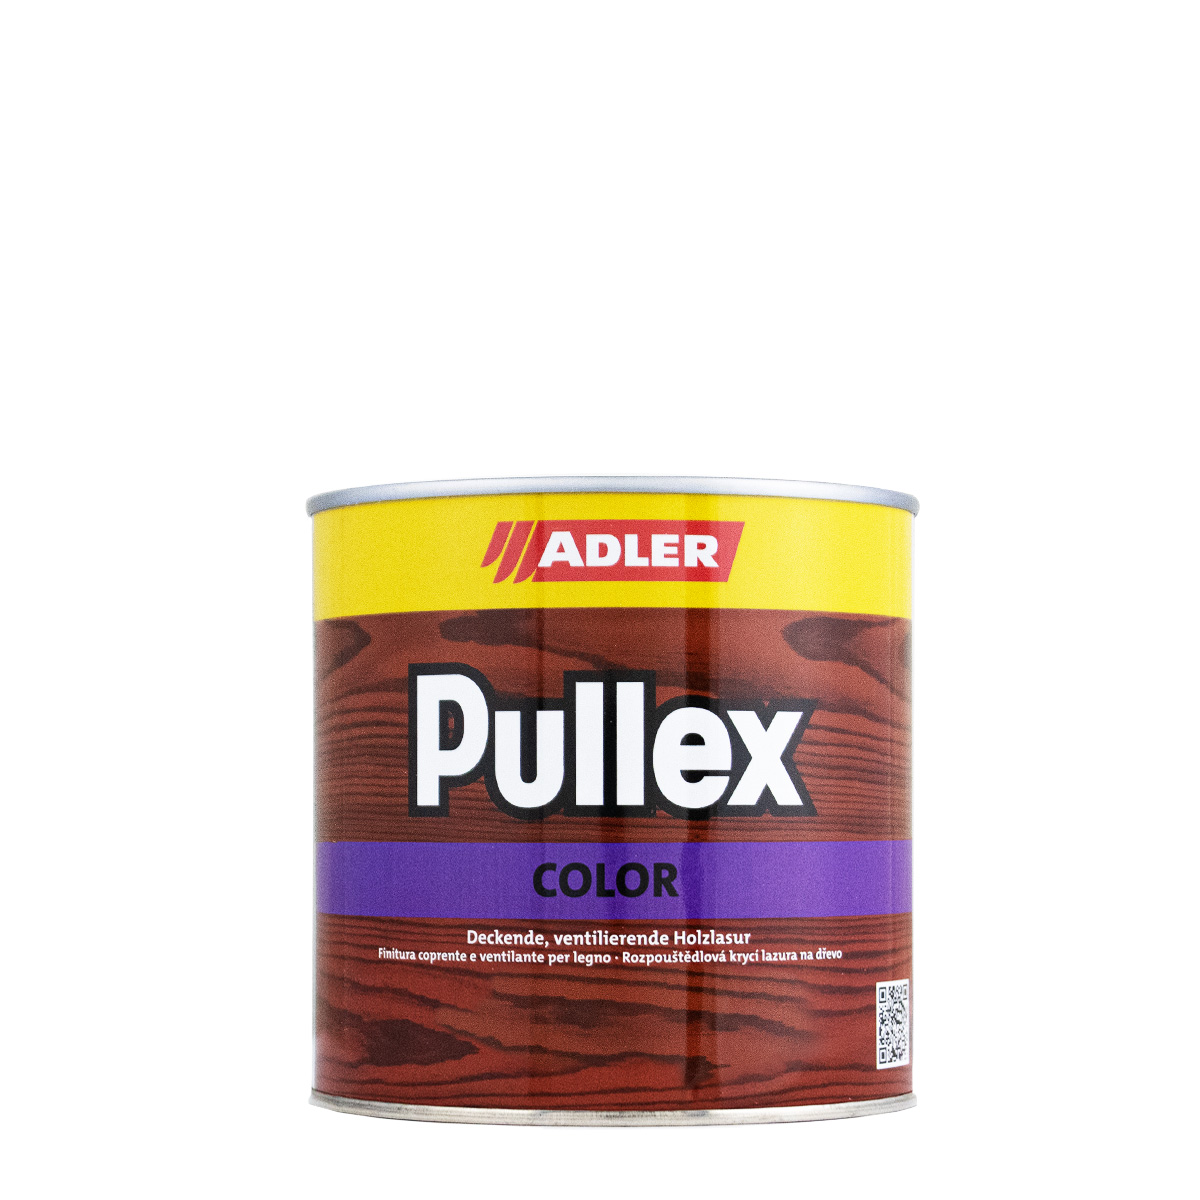 adler_pullex_color_750ml_gross